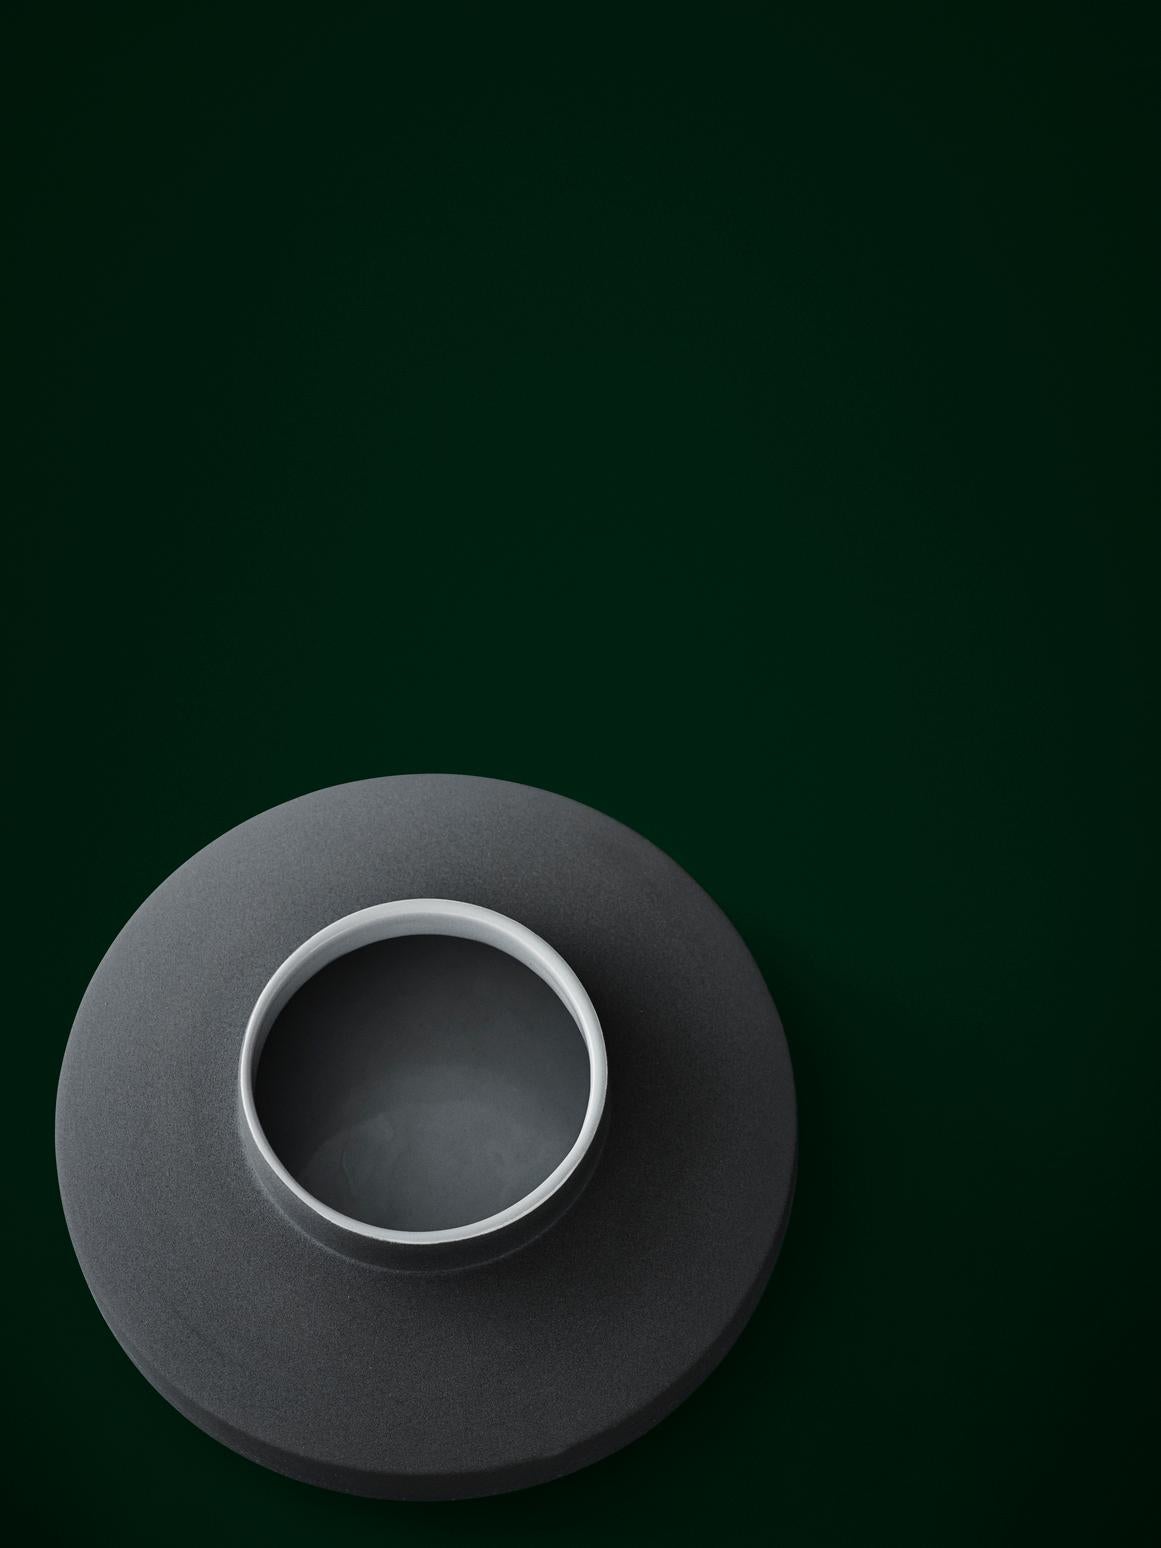 Danish Milia Seyppel Handmade Ceramic Vase, Grey Engobe Glazing Outside by Karakter